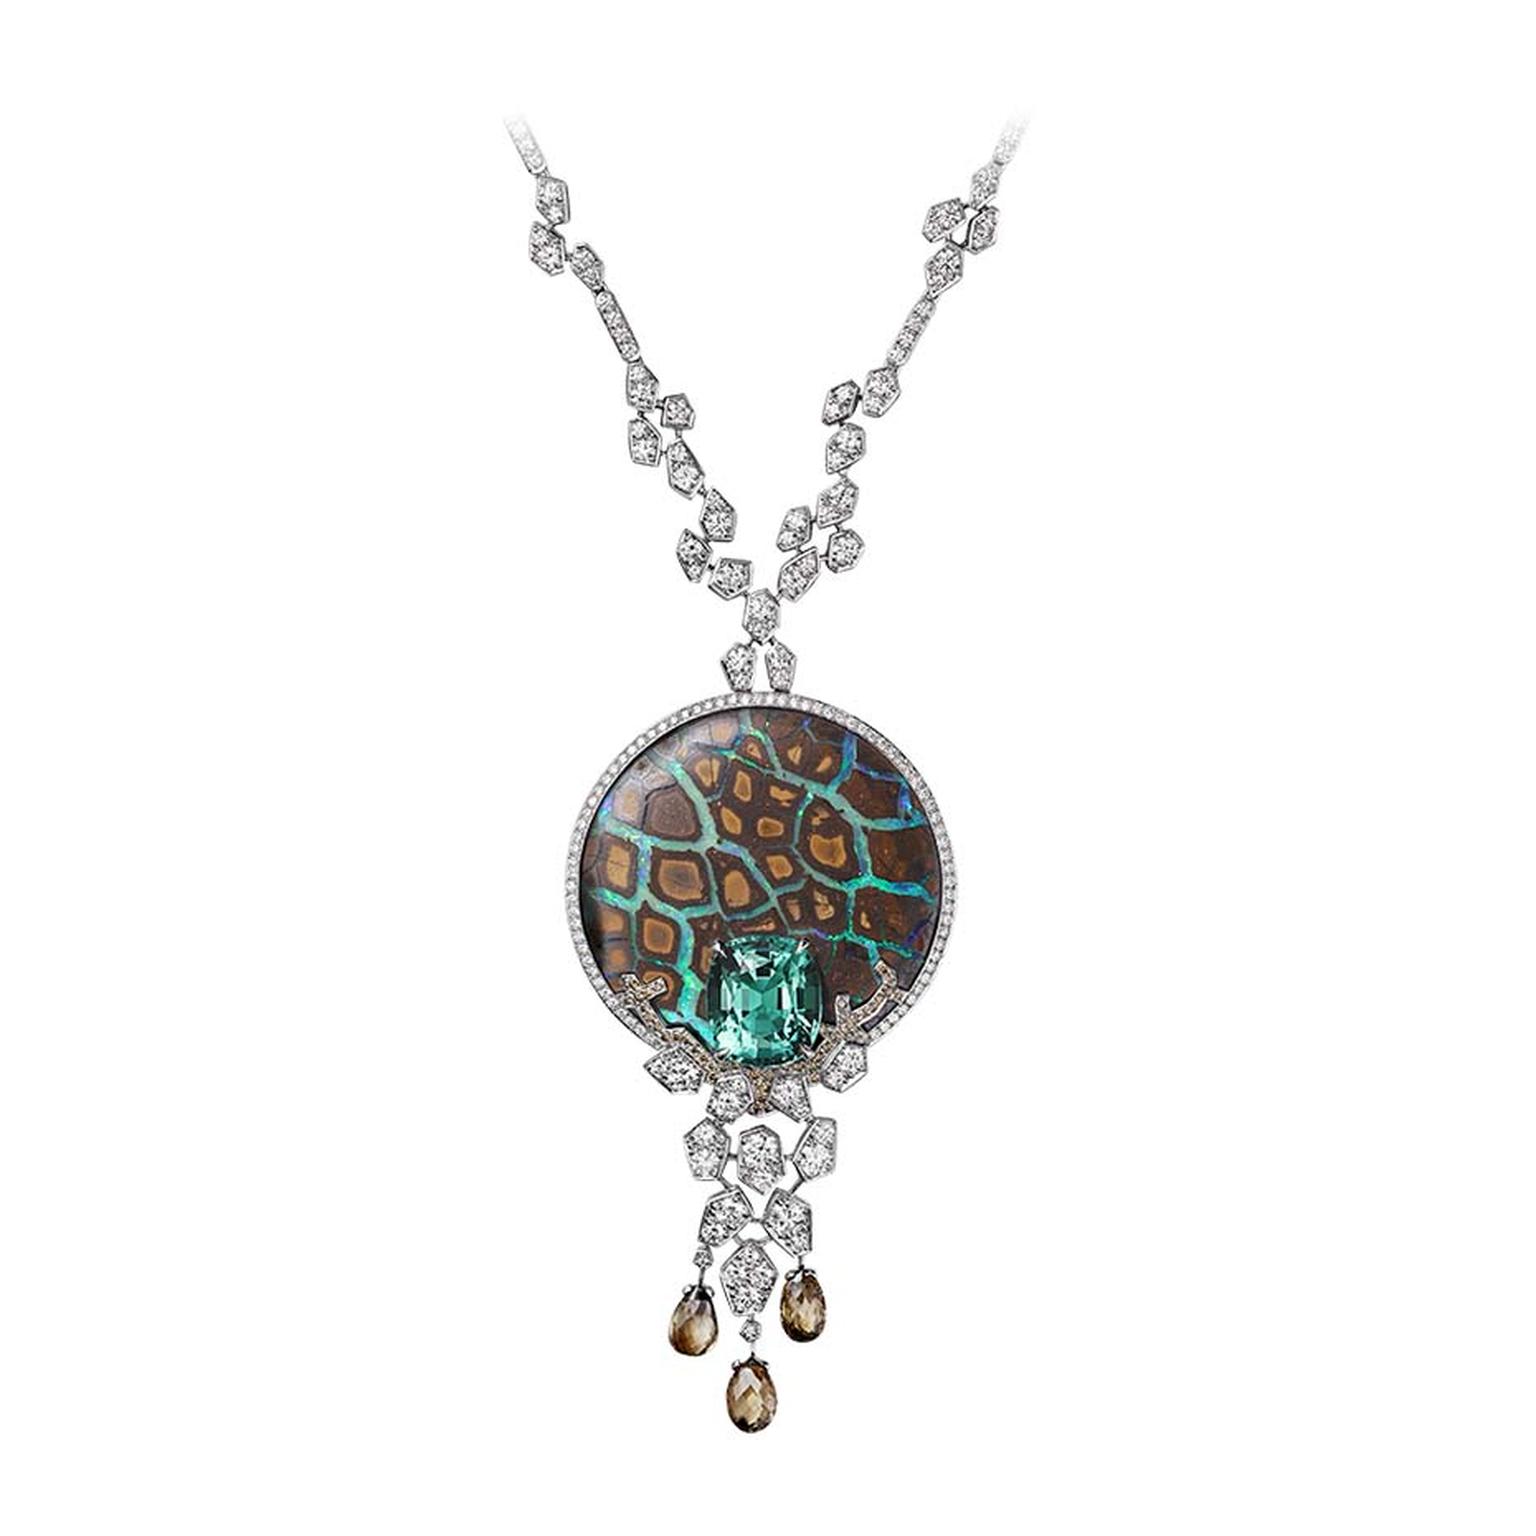 L'Odyssée de Cartier High Jewellery necklace in platinum,